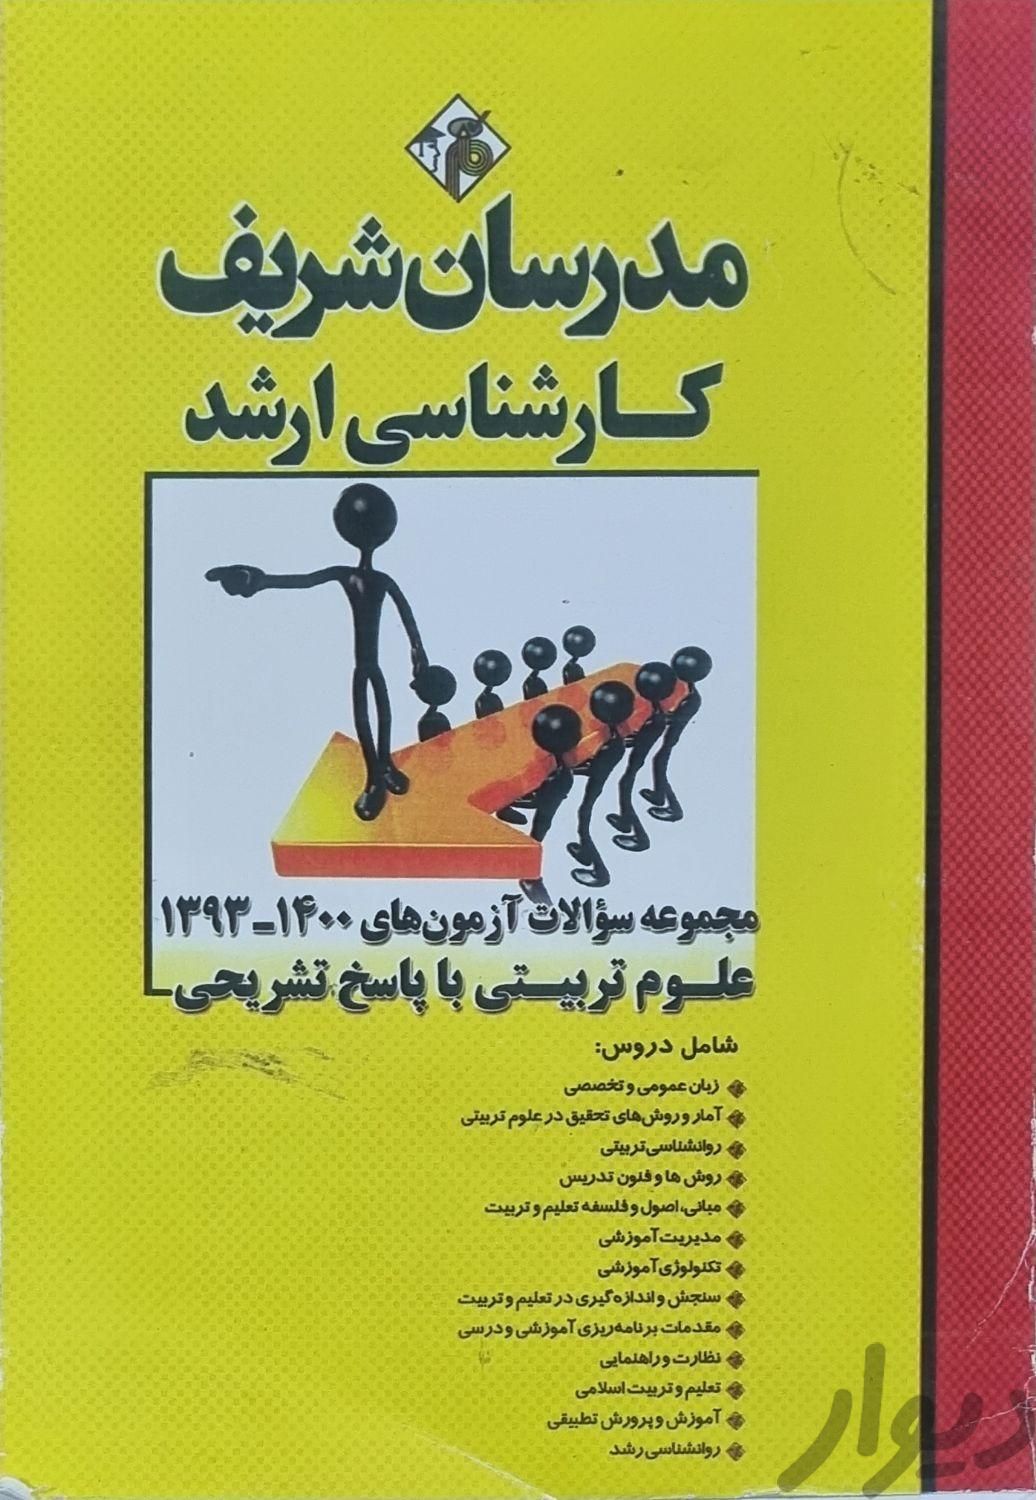 بسته پک کامل ارشد مدرسان علوم تربیتی|کتاب و مجله آموزشی|تبریز, |دیوار